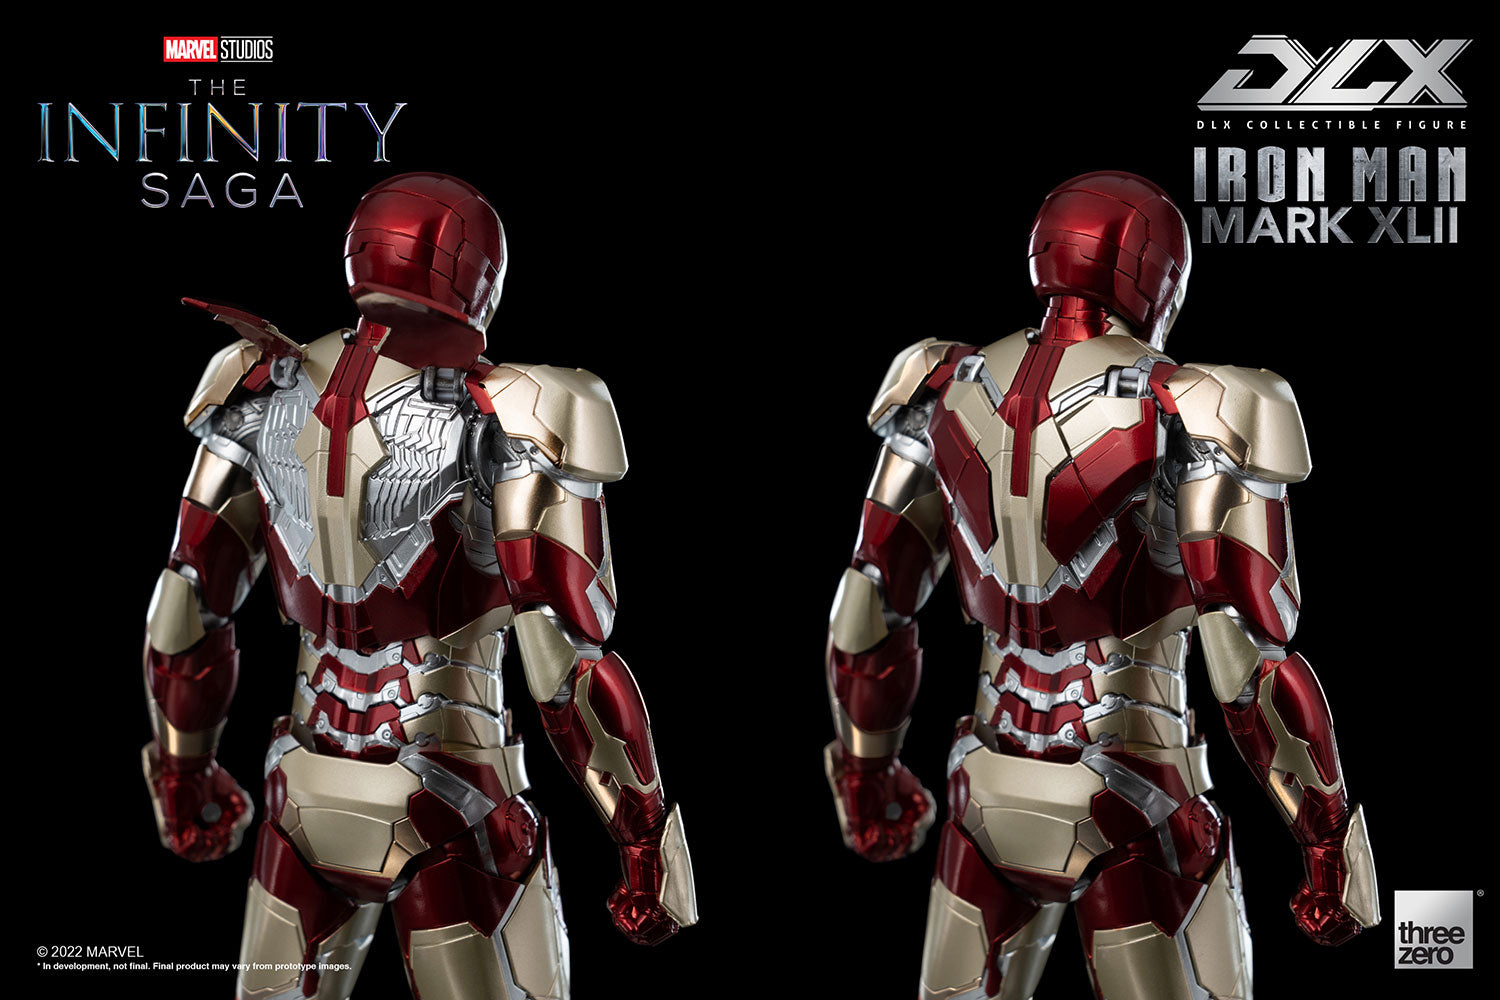 threezero - Marvel Studios: The Infinity Saga - DLX Iron Man Mark XLII (42) - Marvelous Toys